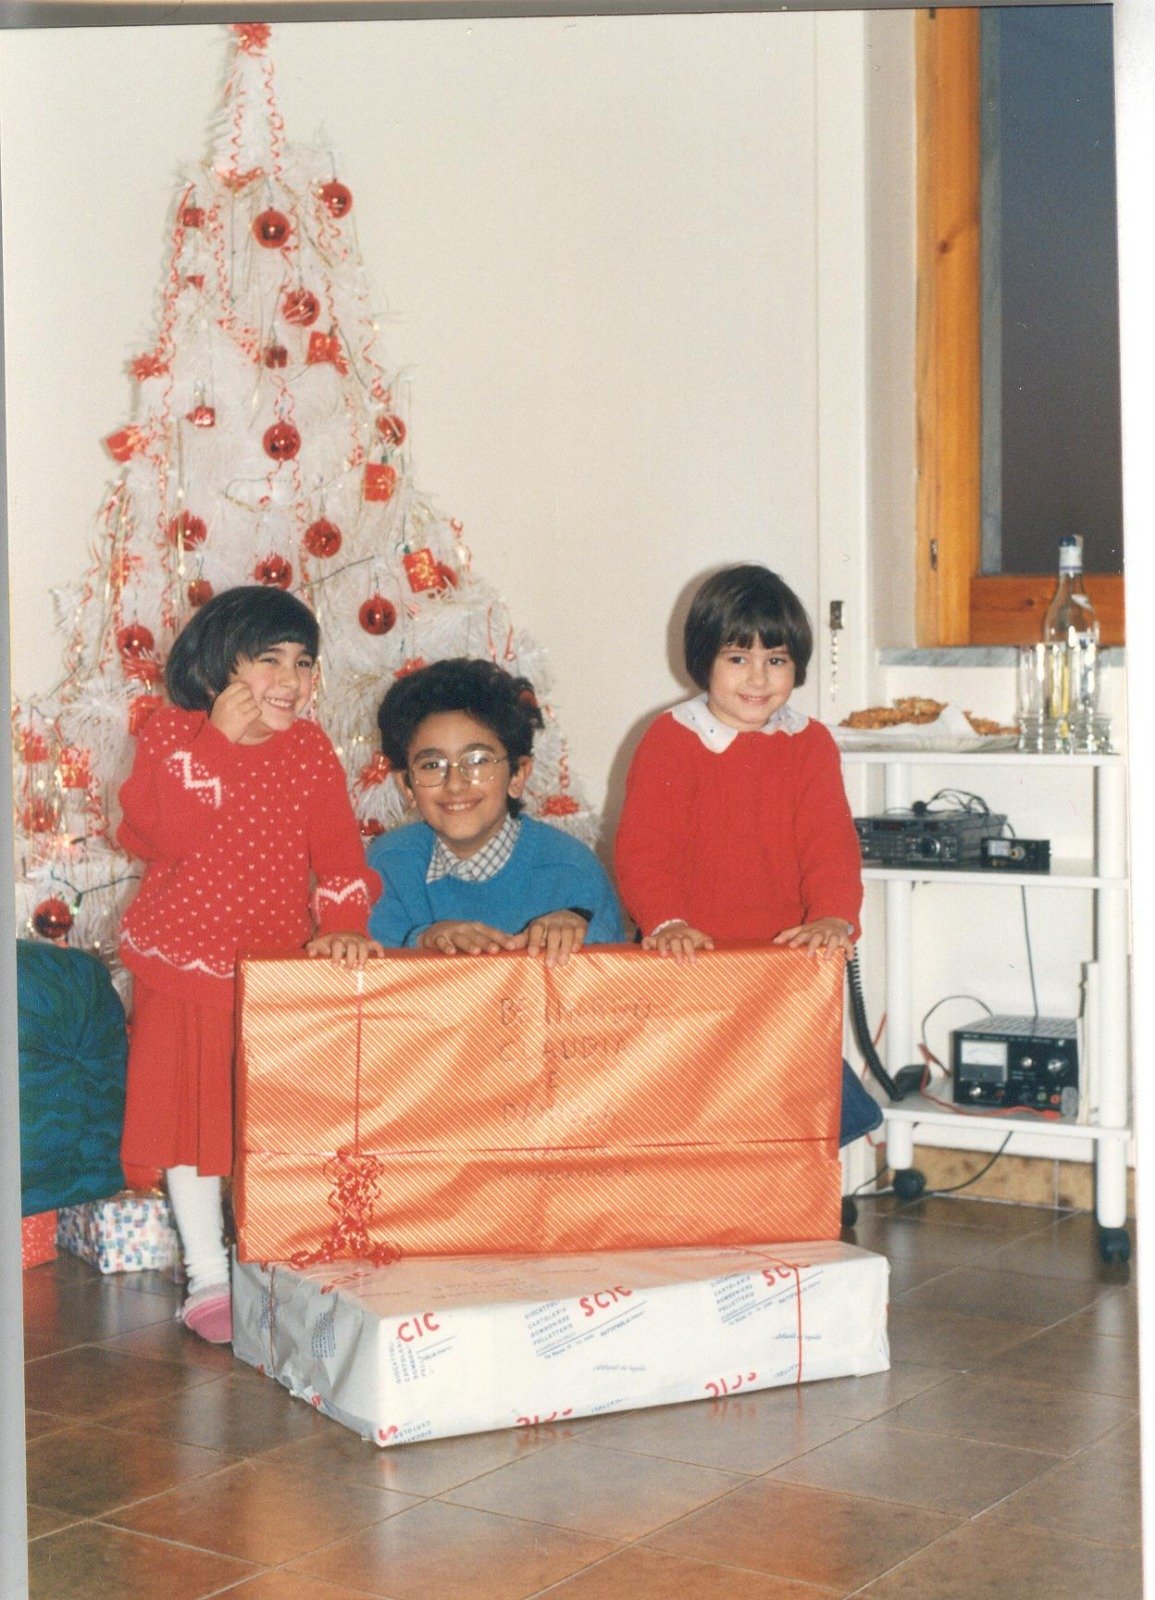 io, mio fratello e mia sorella a Natale da piccoli sotto l'albero